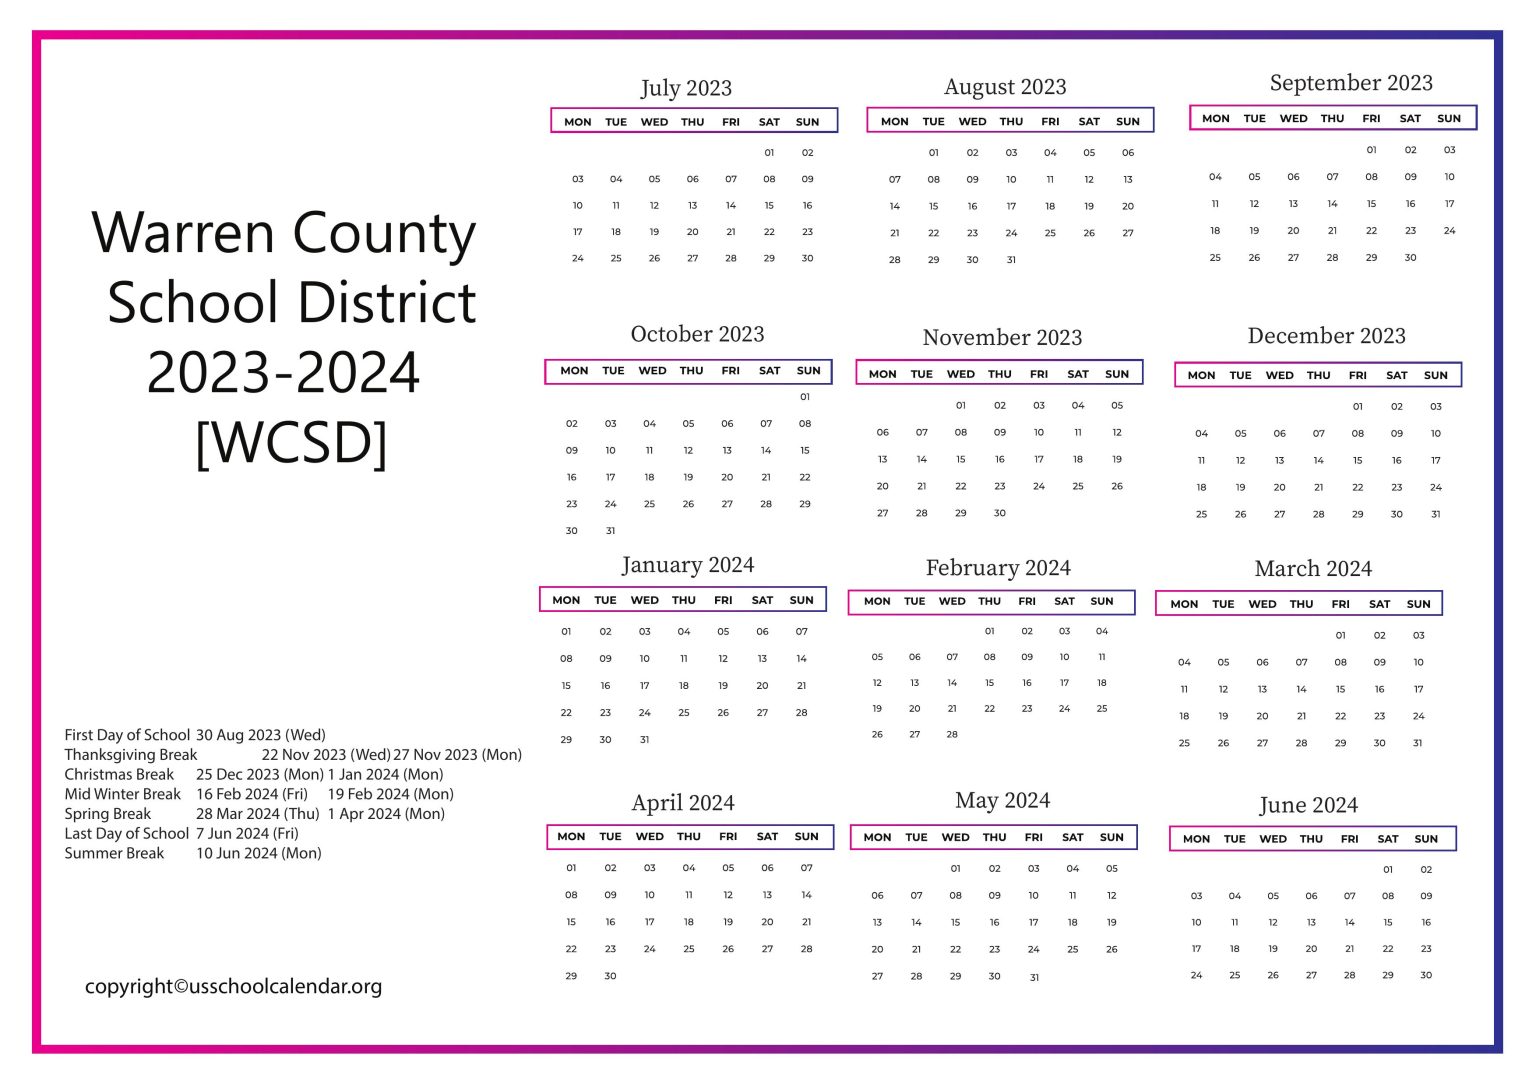 Warren County School District Calendar for 20232024 [WCSD]